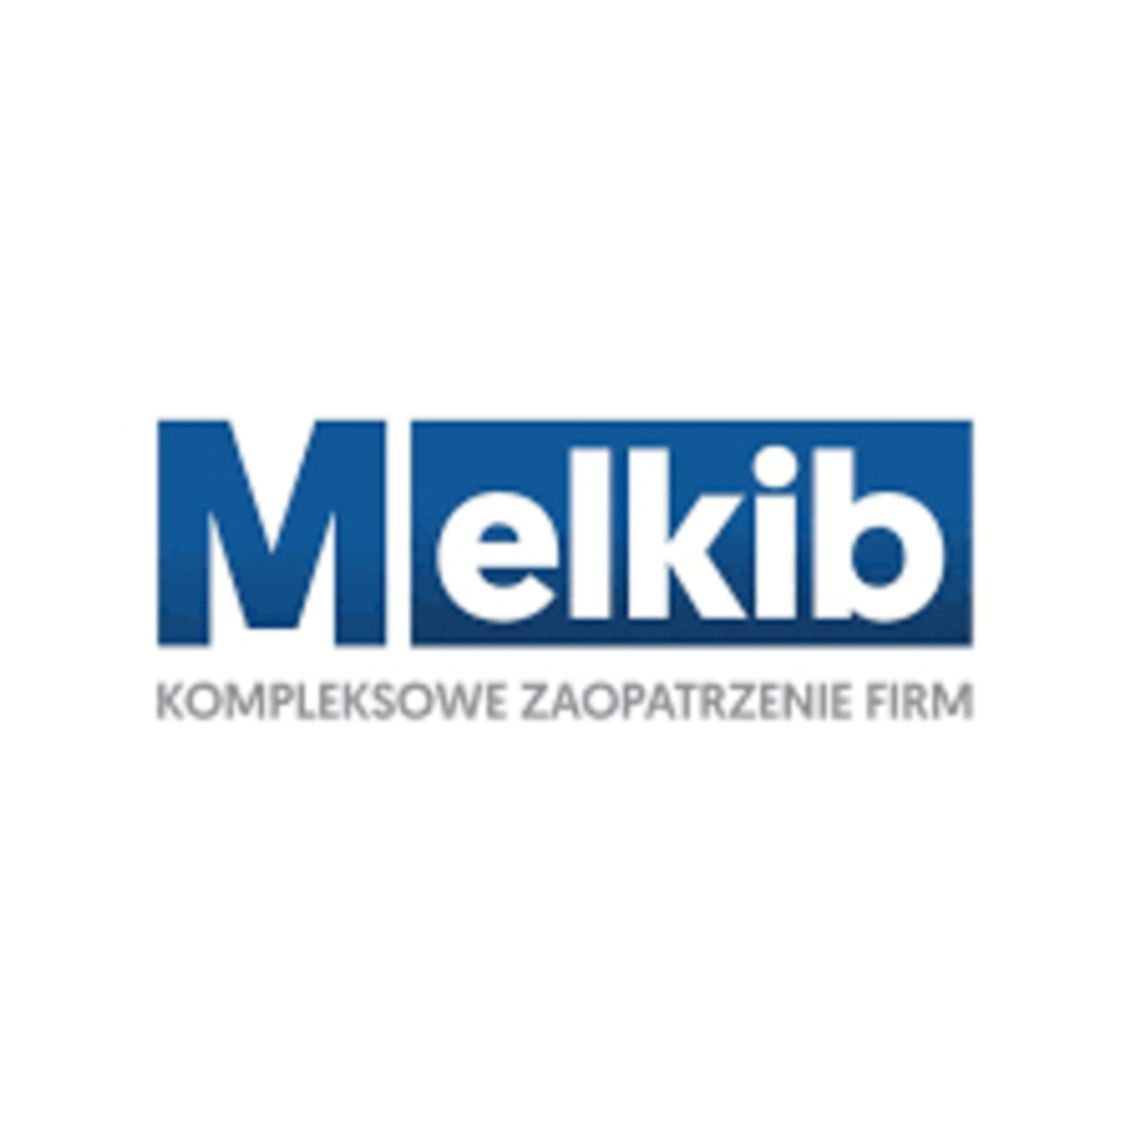 Melkib.com - Kompleksowe zaopatrzenie firm